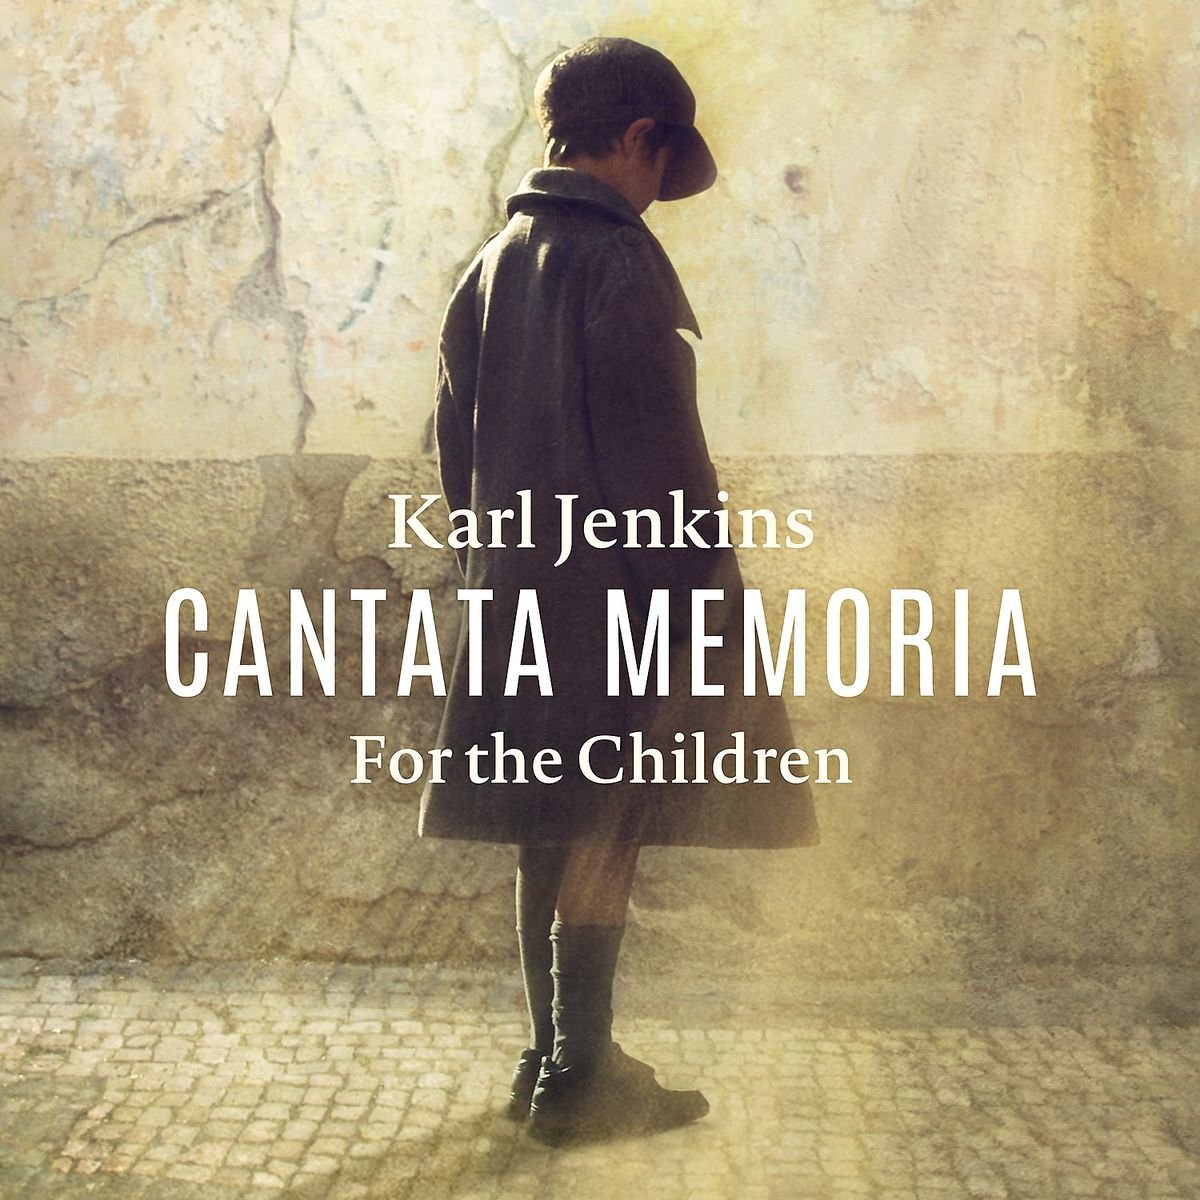 Karl Jenkins - Cantata Memoria - For The Children (2016) [PrestoClassical FLAC 24bit/96kHz]